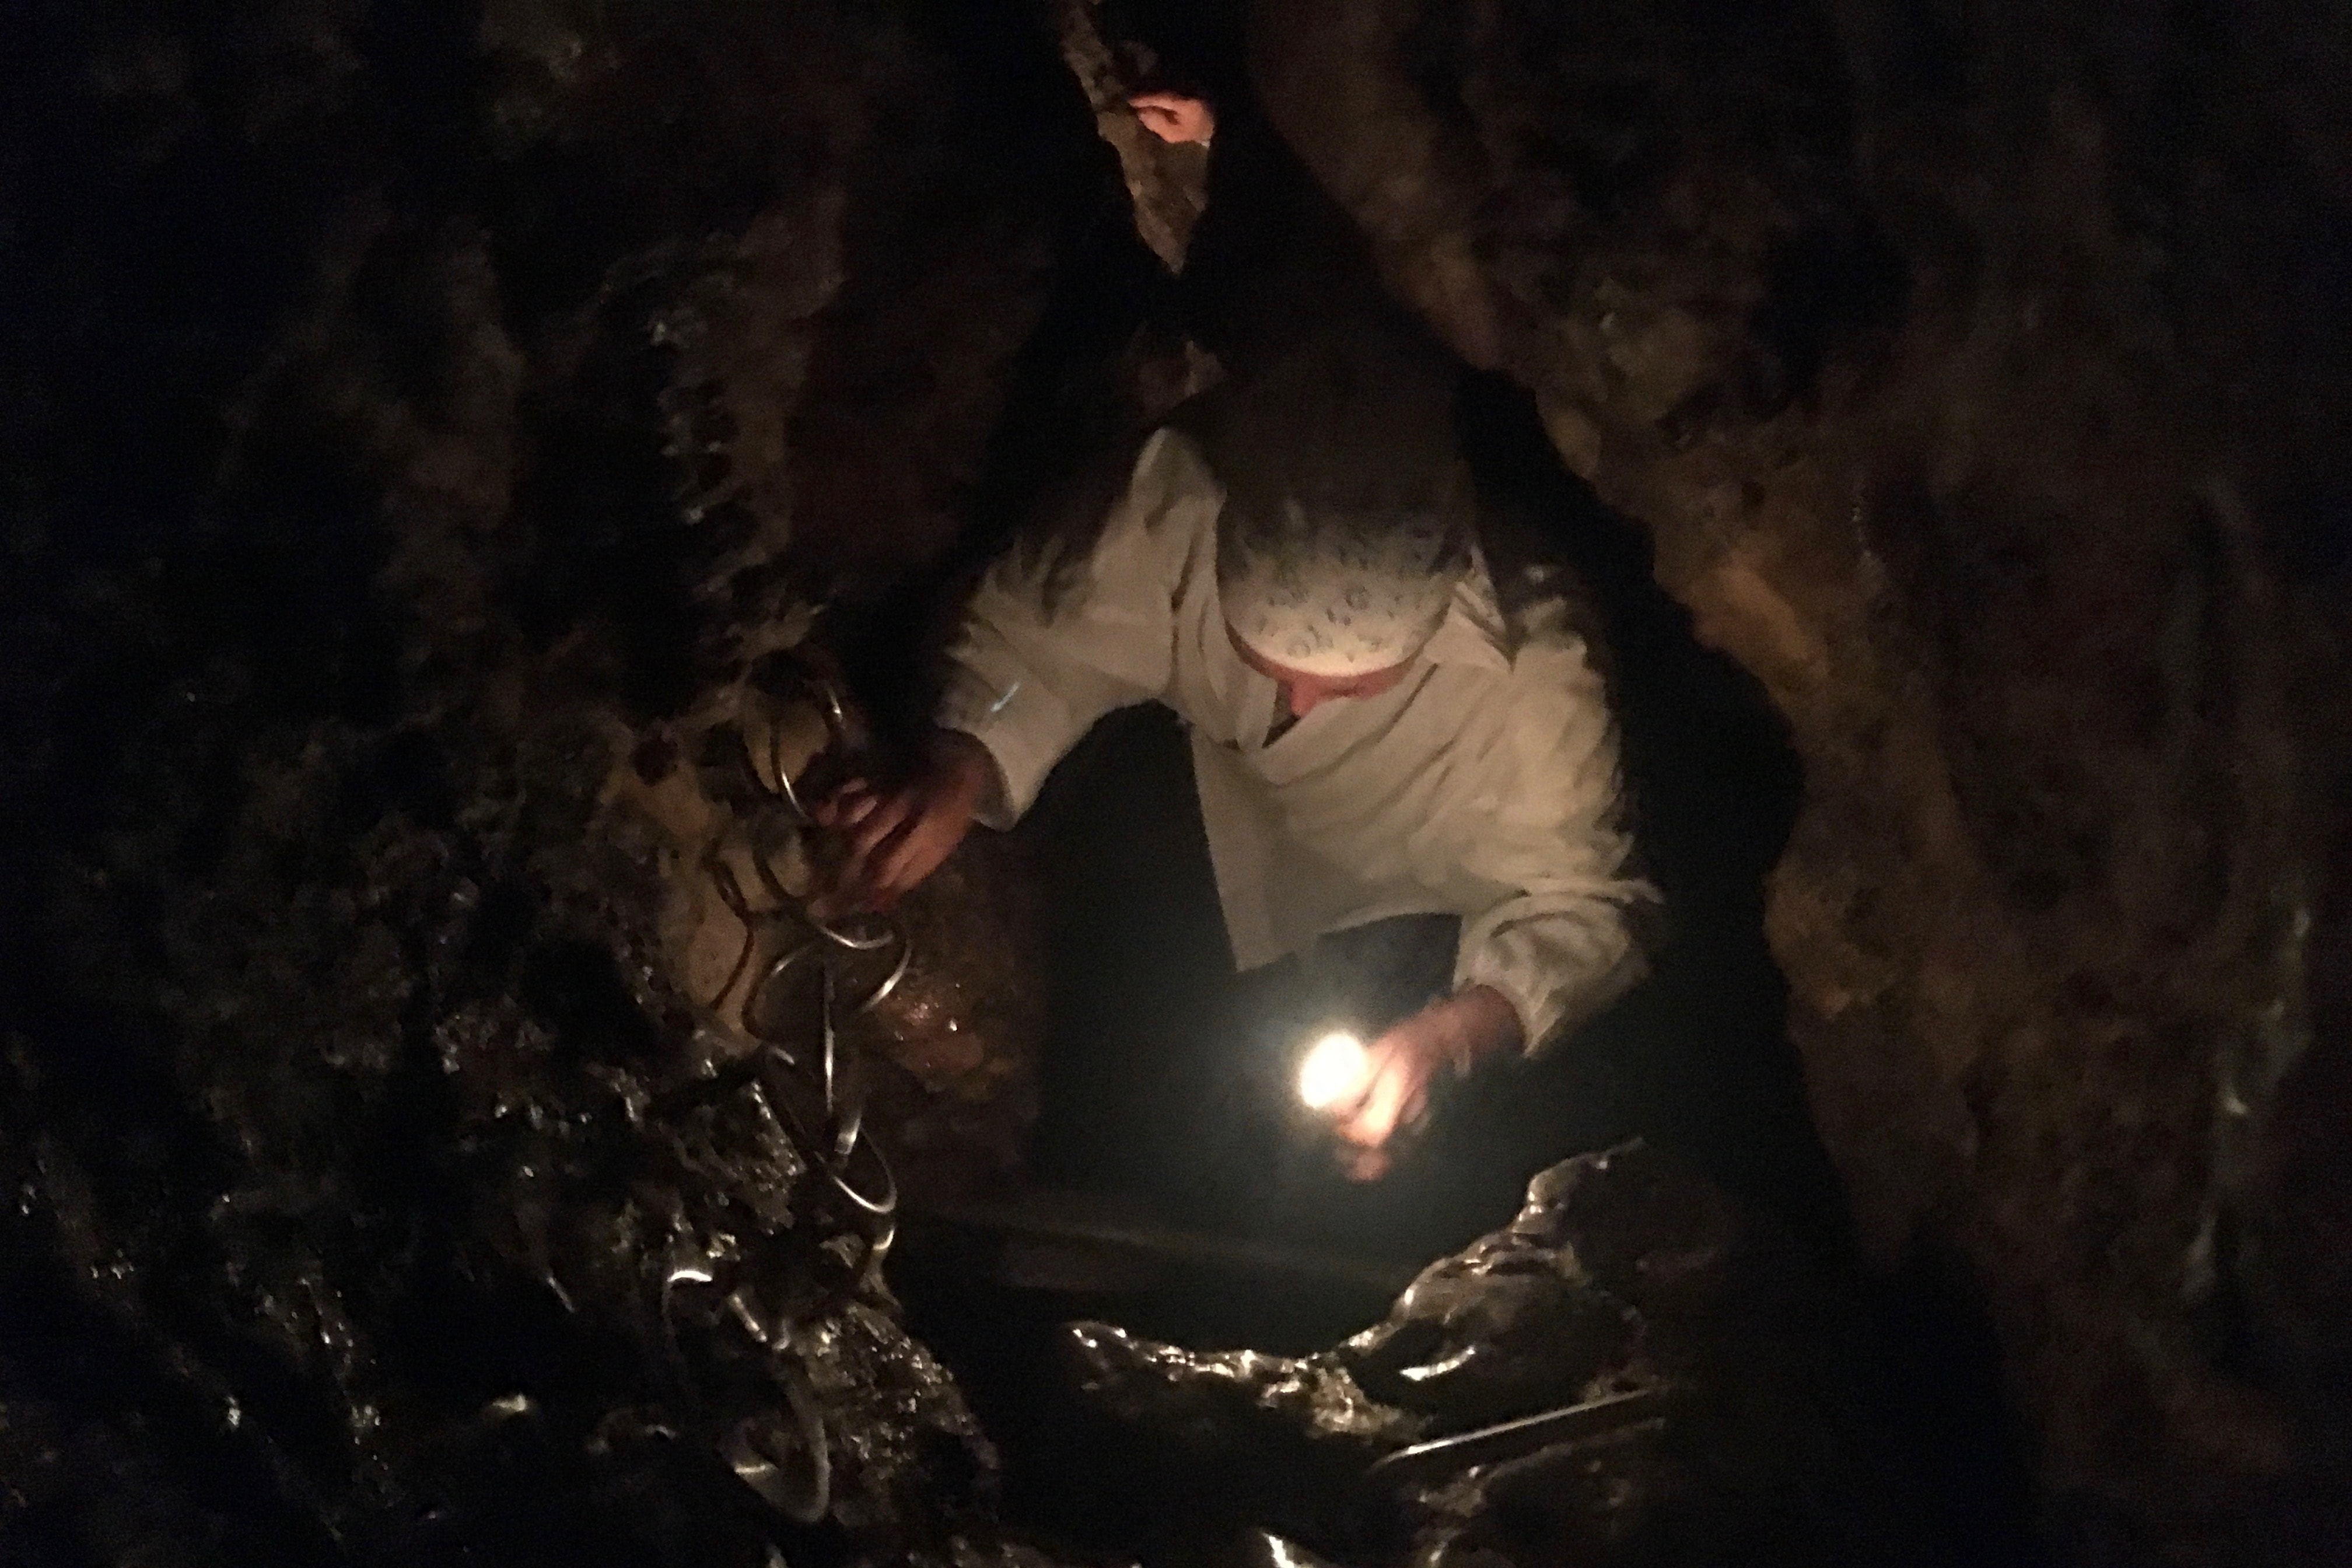 Jigen-ji Cave Ritual